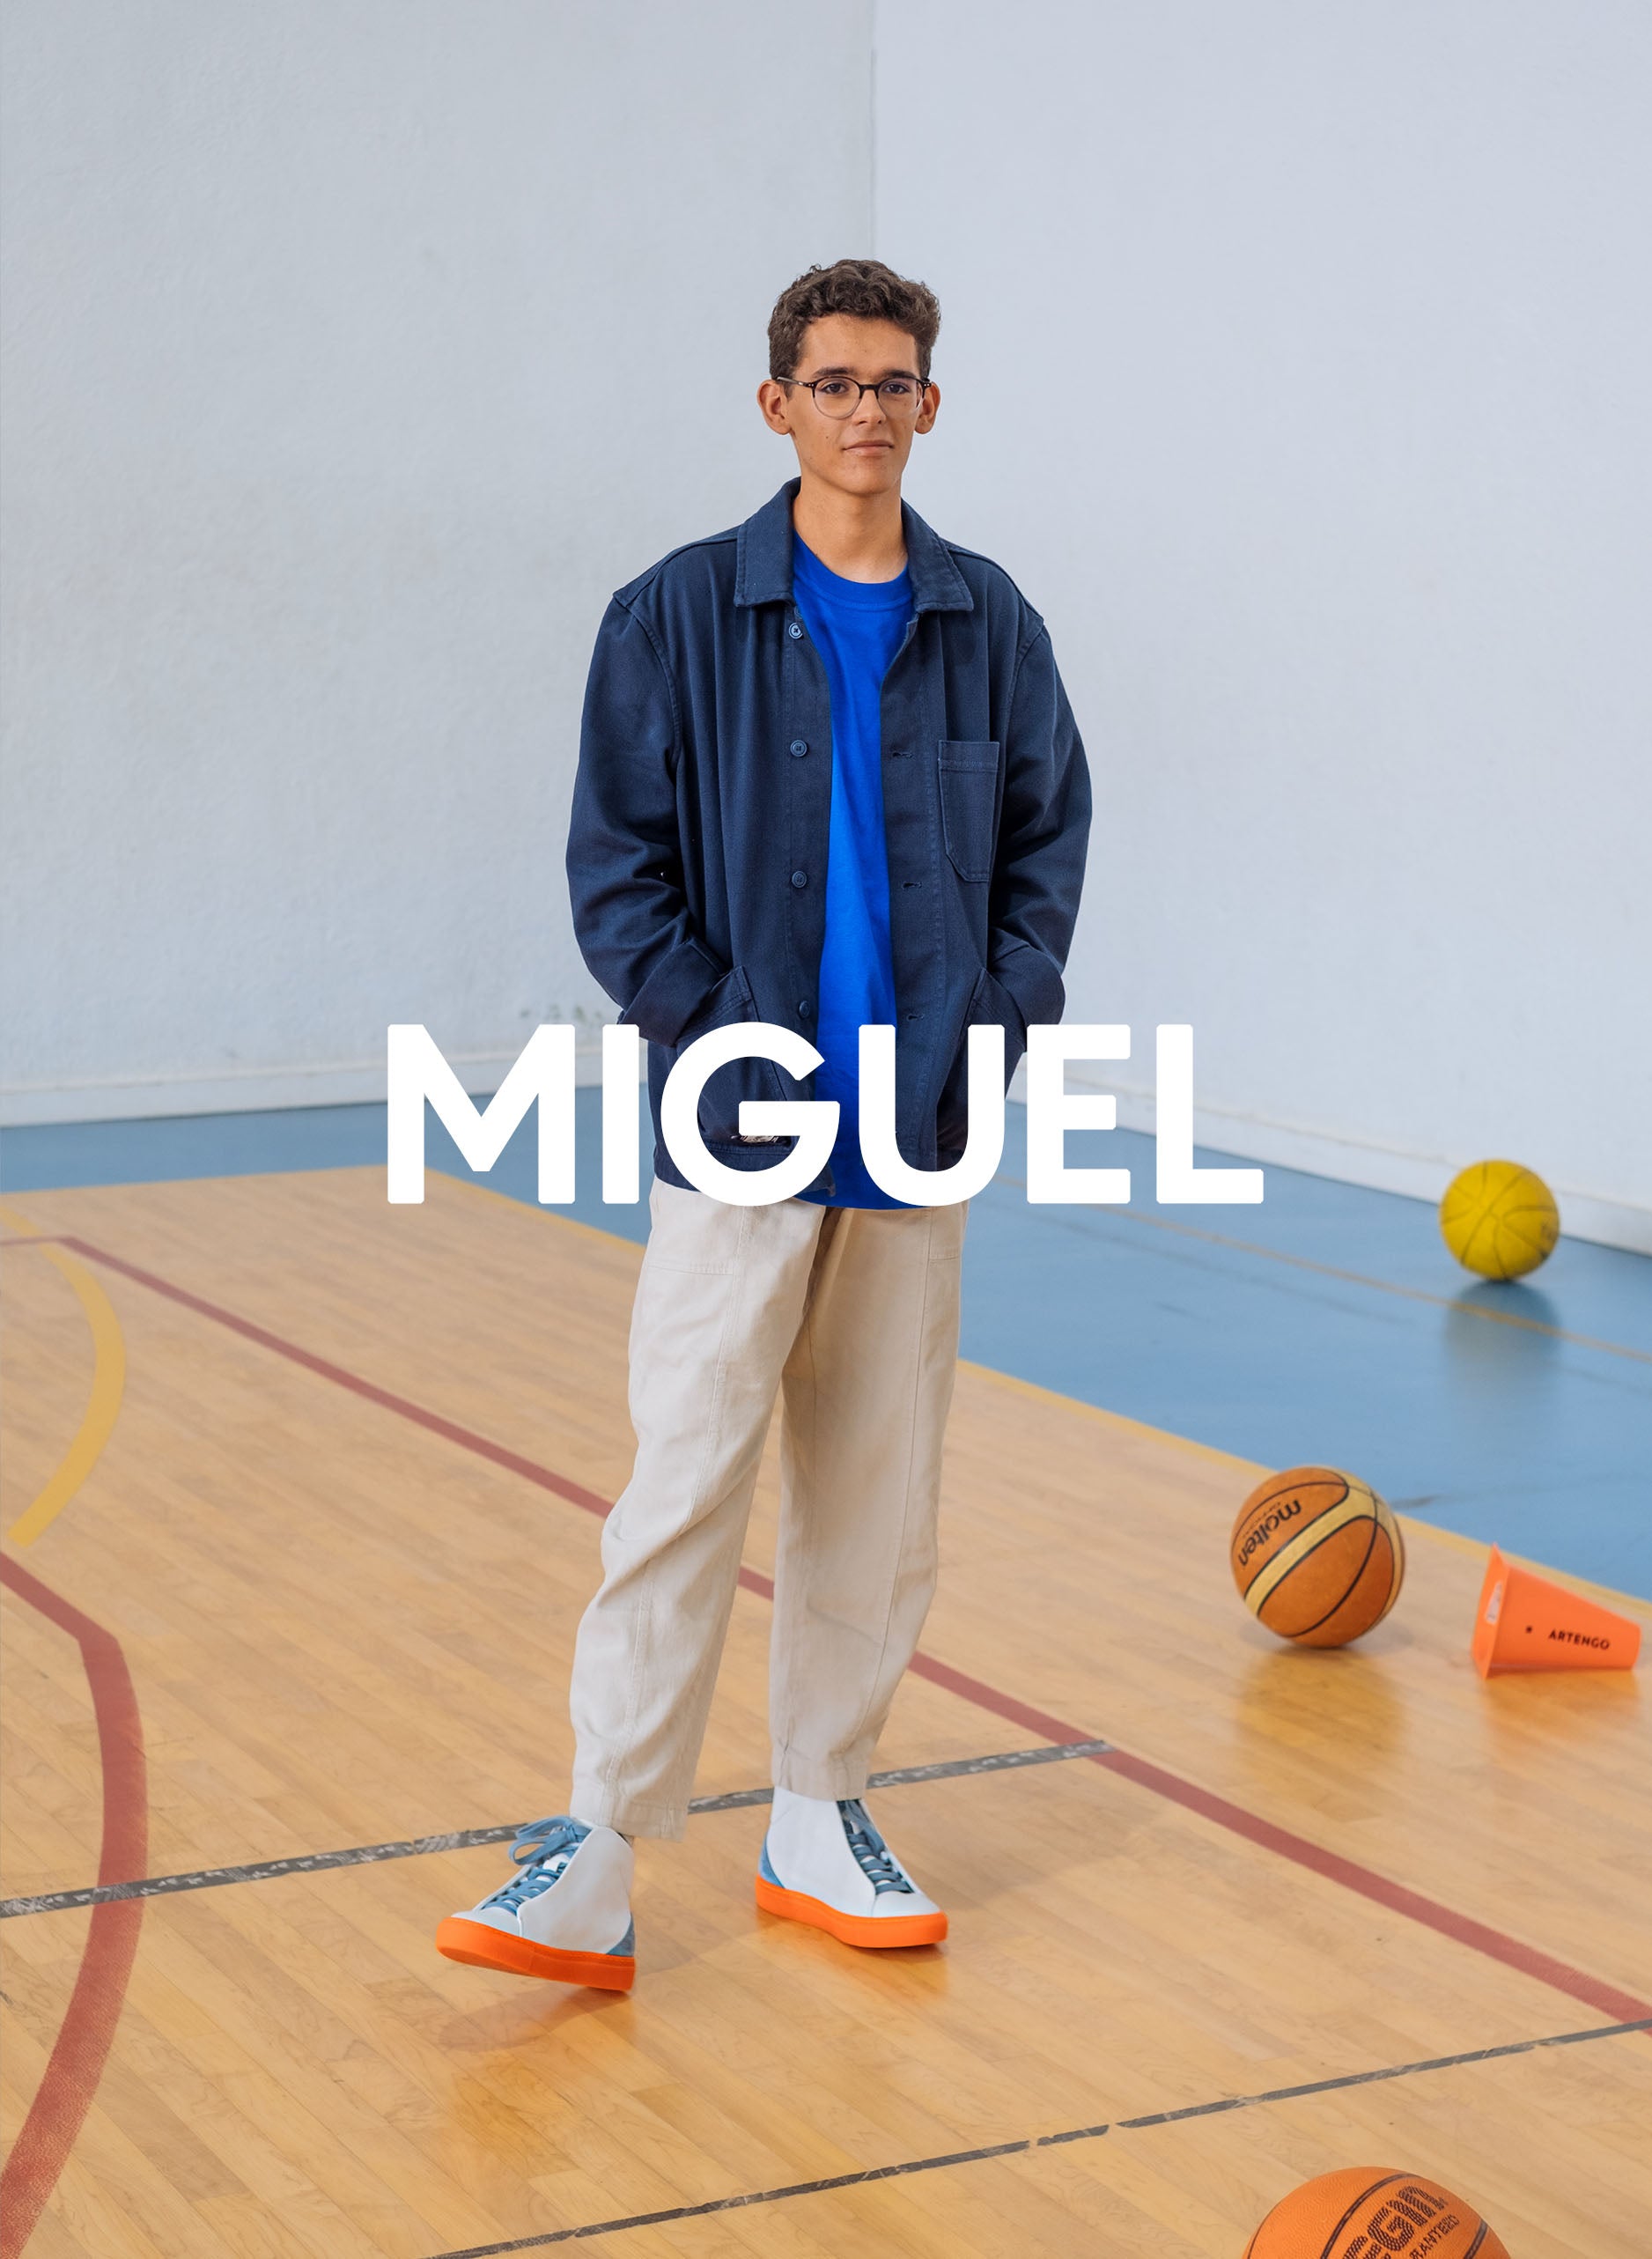 Miguel in palestra indossa una giacca blu, pantaloni beige e anche diverge sneakers, promuovendo l'impatto sociale e le scarpe personalizzate attraverso il progetto Imagine.